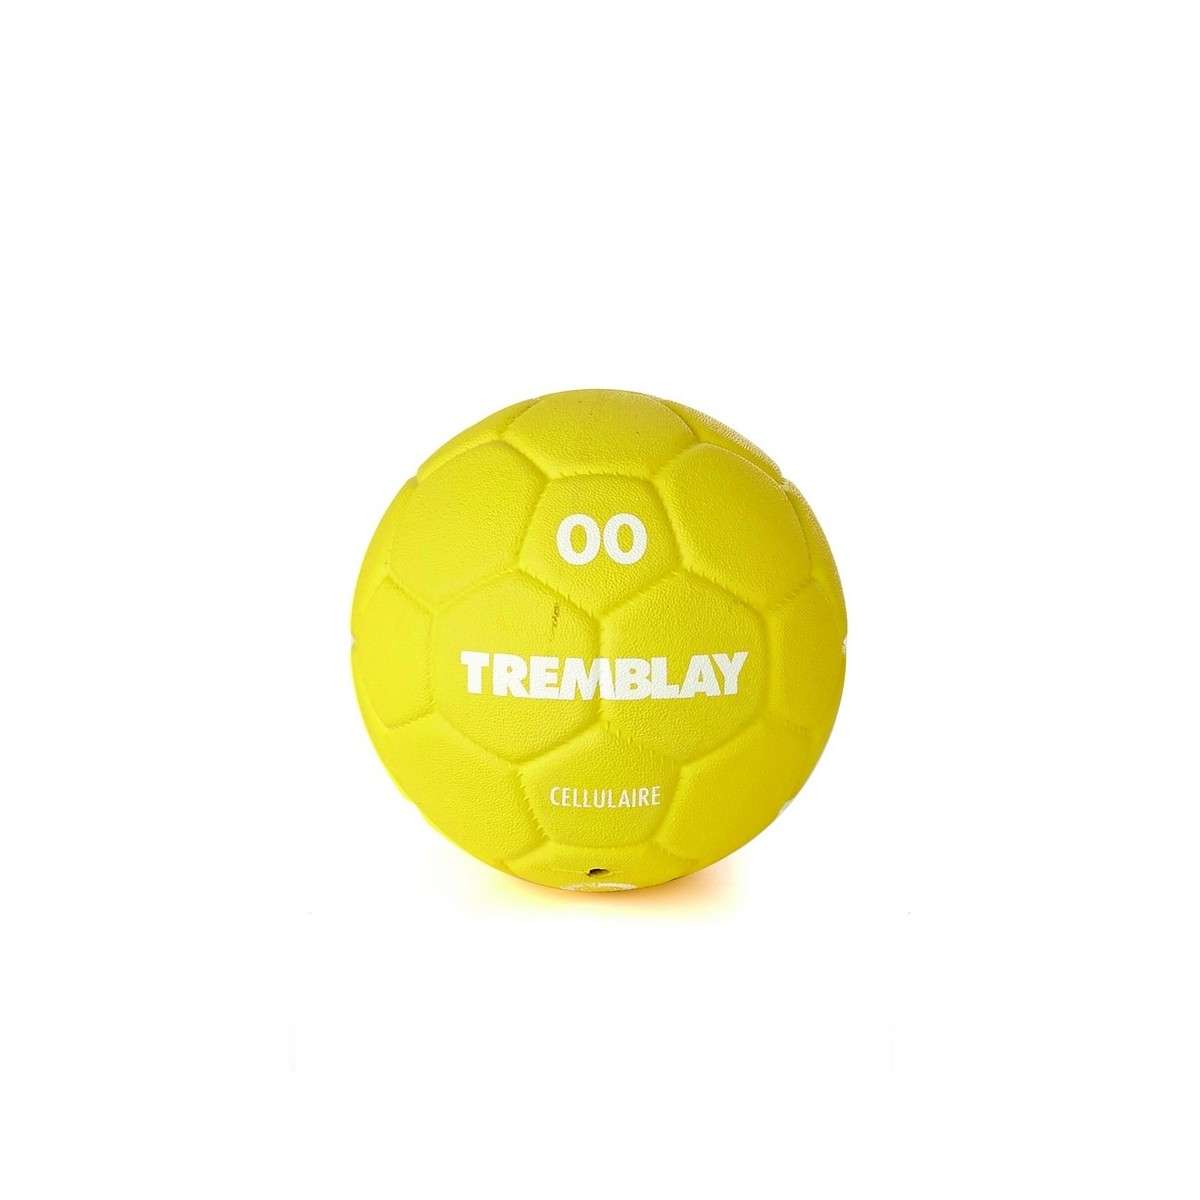 Le Poids d’un Ballon de Handball : Tout Ce Que Vous Devez Savoir